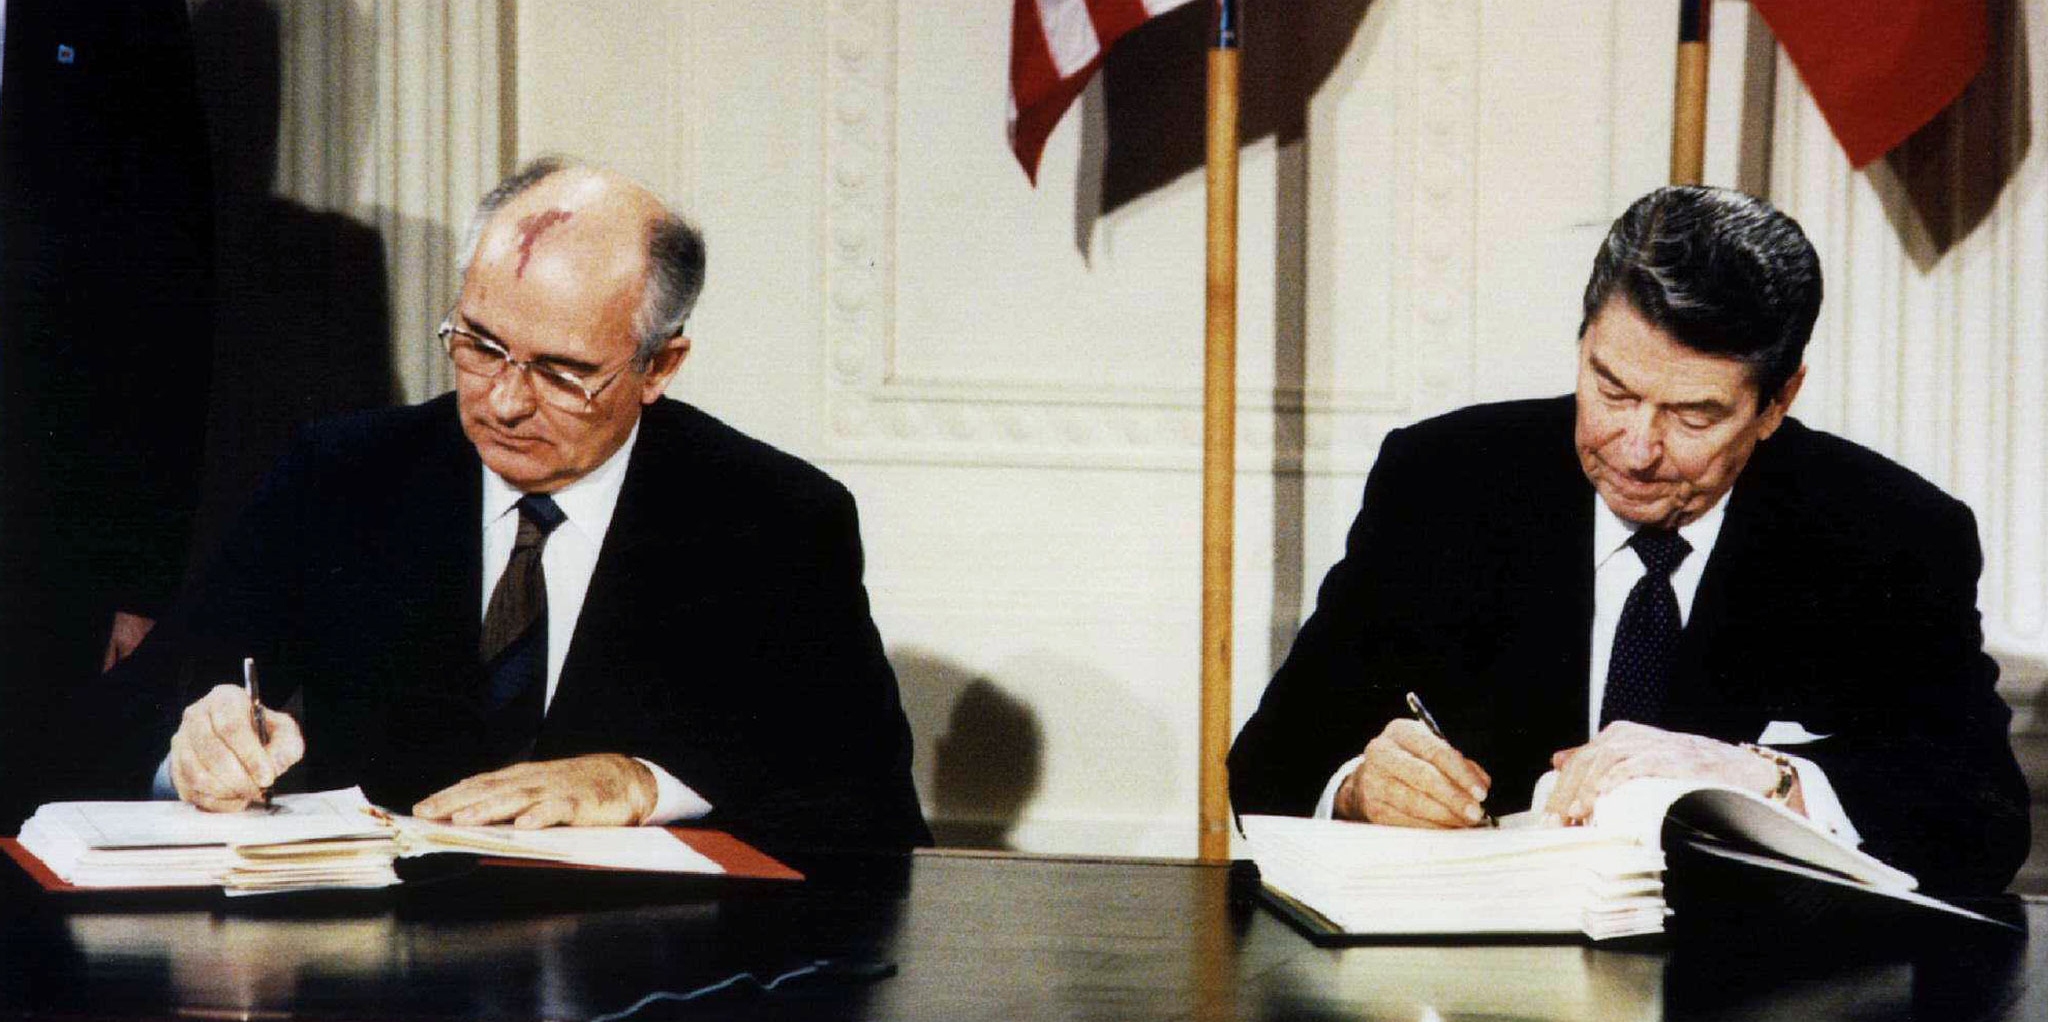 mikhail-gorbachev-ronald-reagan-nuclear-treaty-1